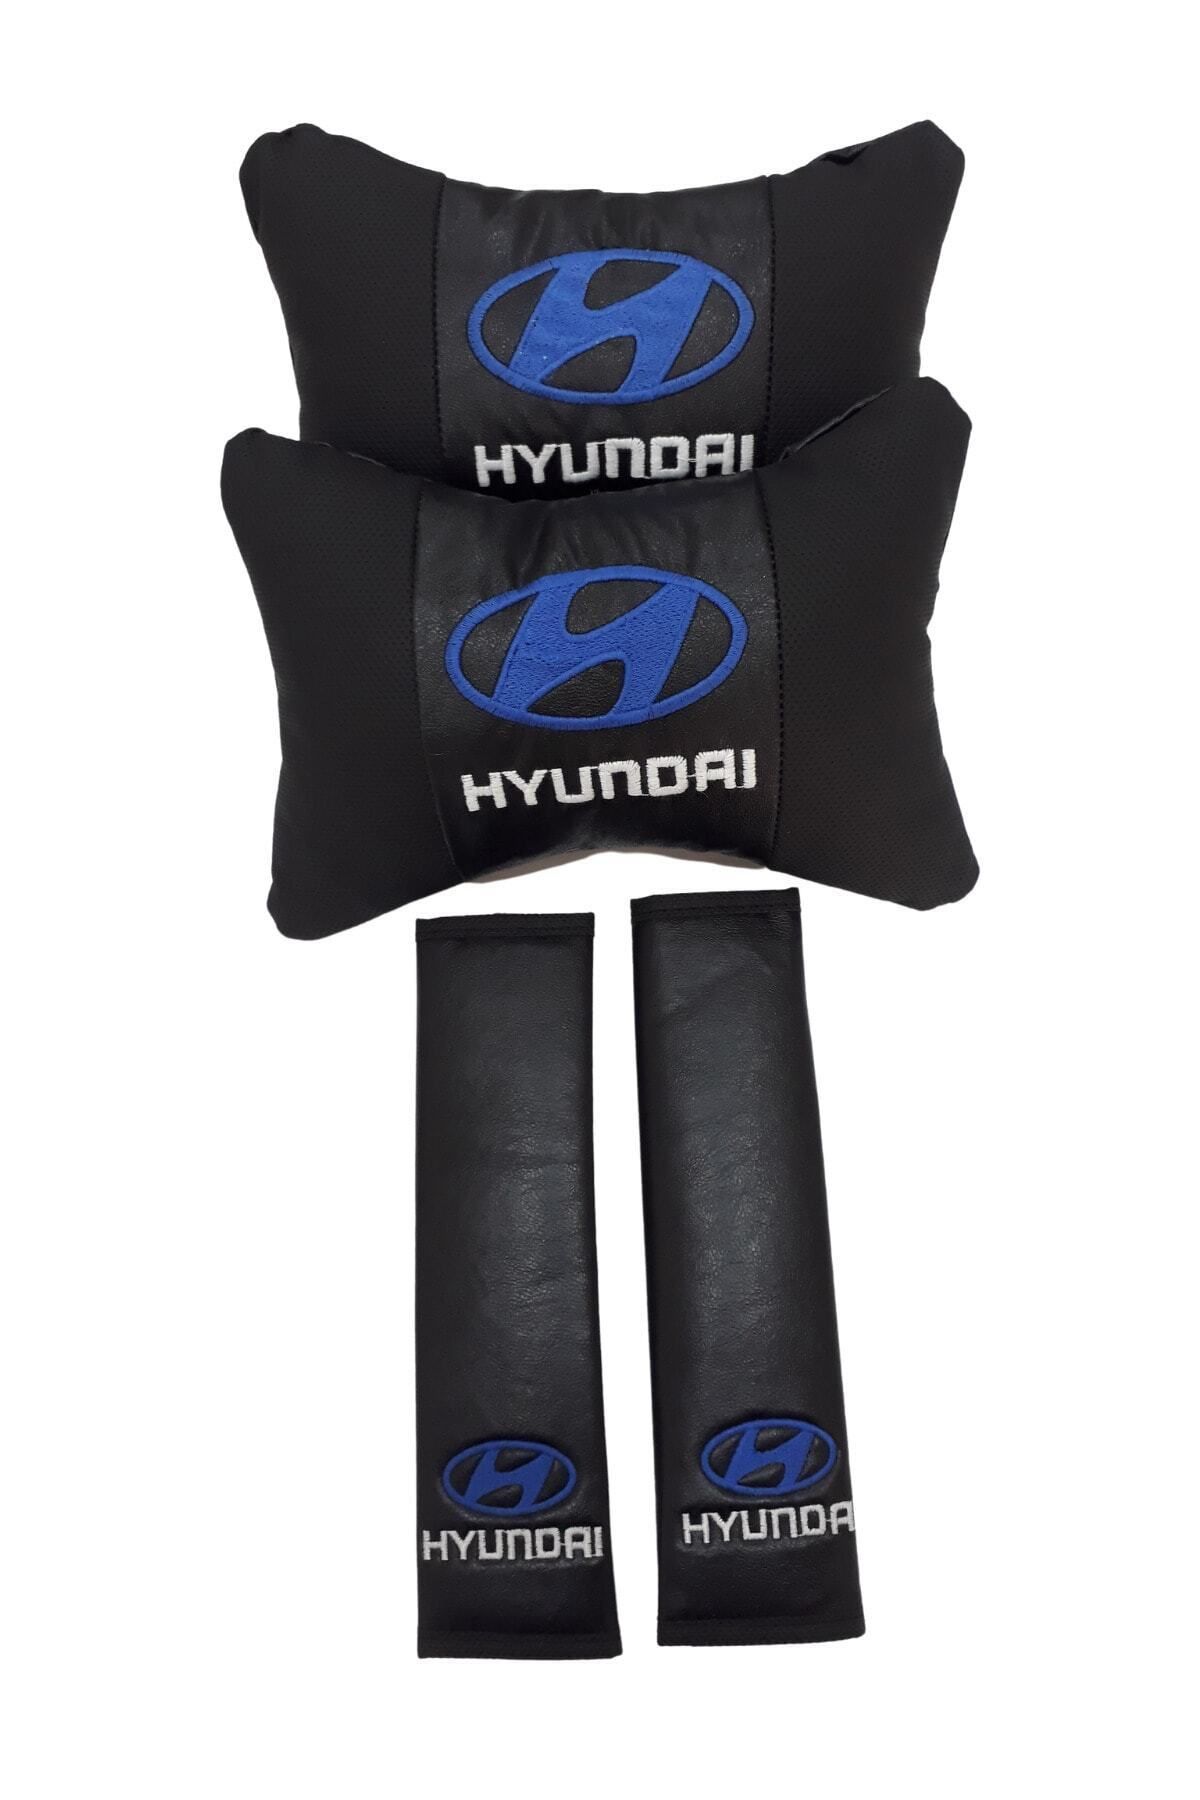 Hyundai 2'li Ortopedik & Nakışlı Lüks Araç Seyahat Deri Boyun Yastığı / Kemer Pedi Takımı